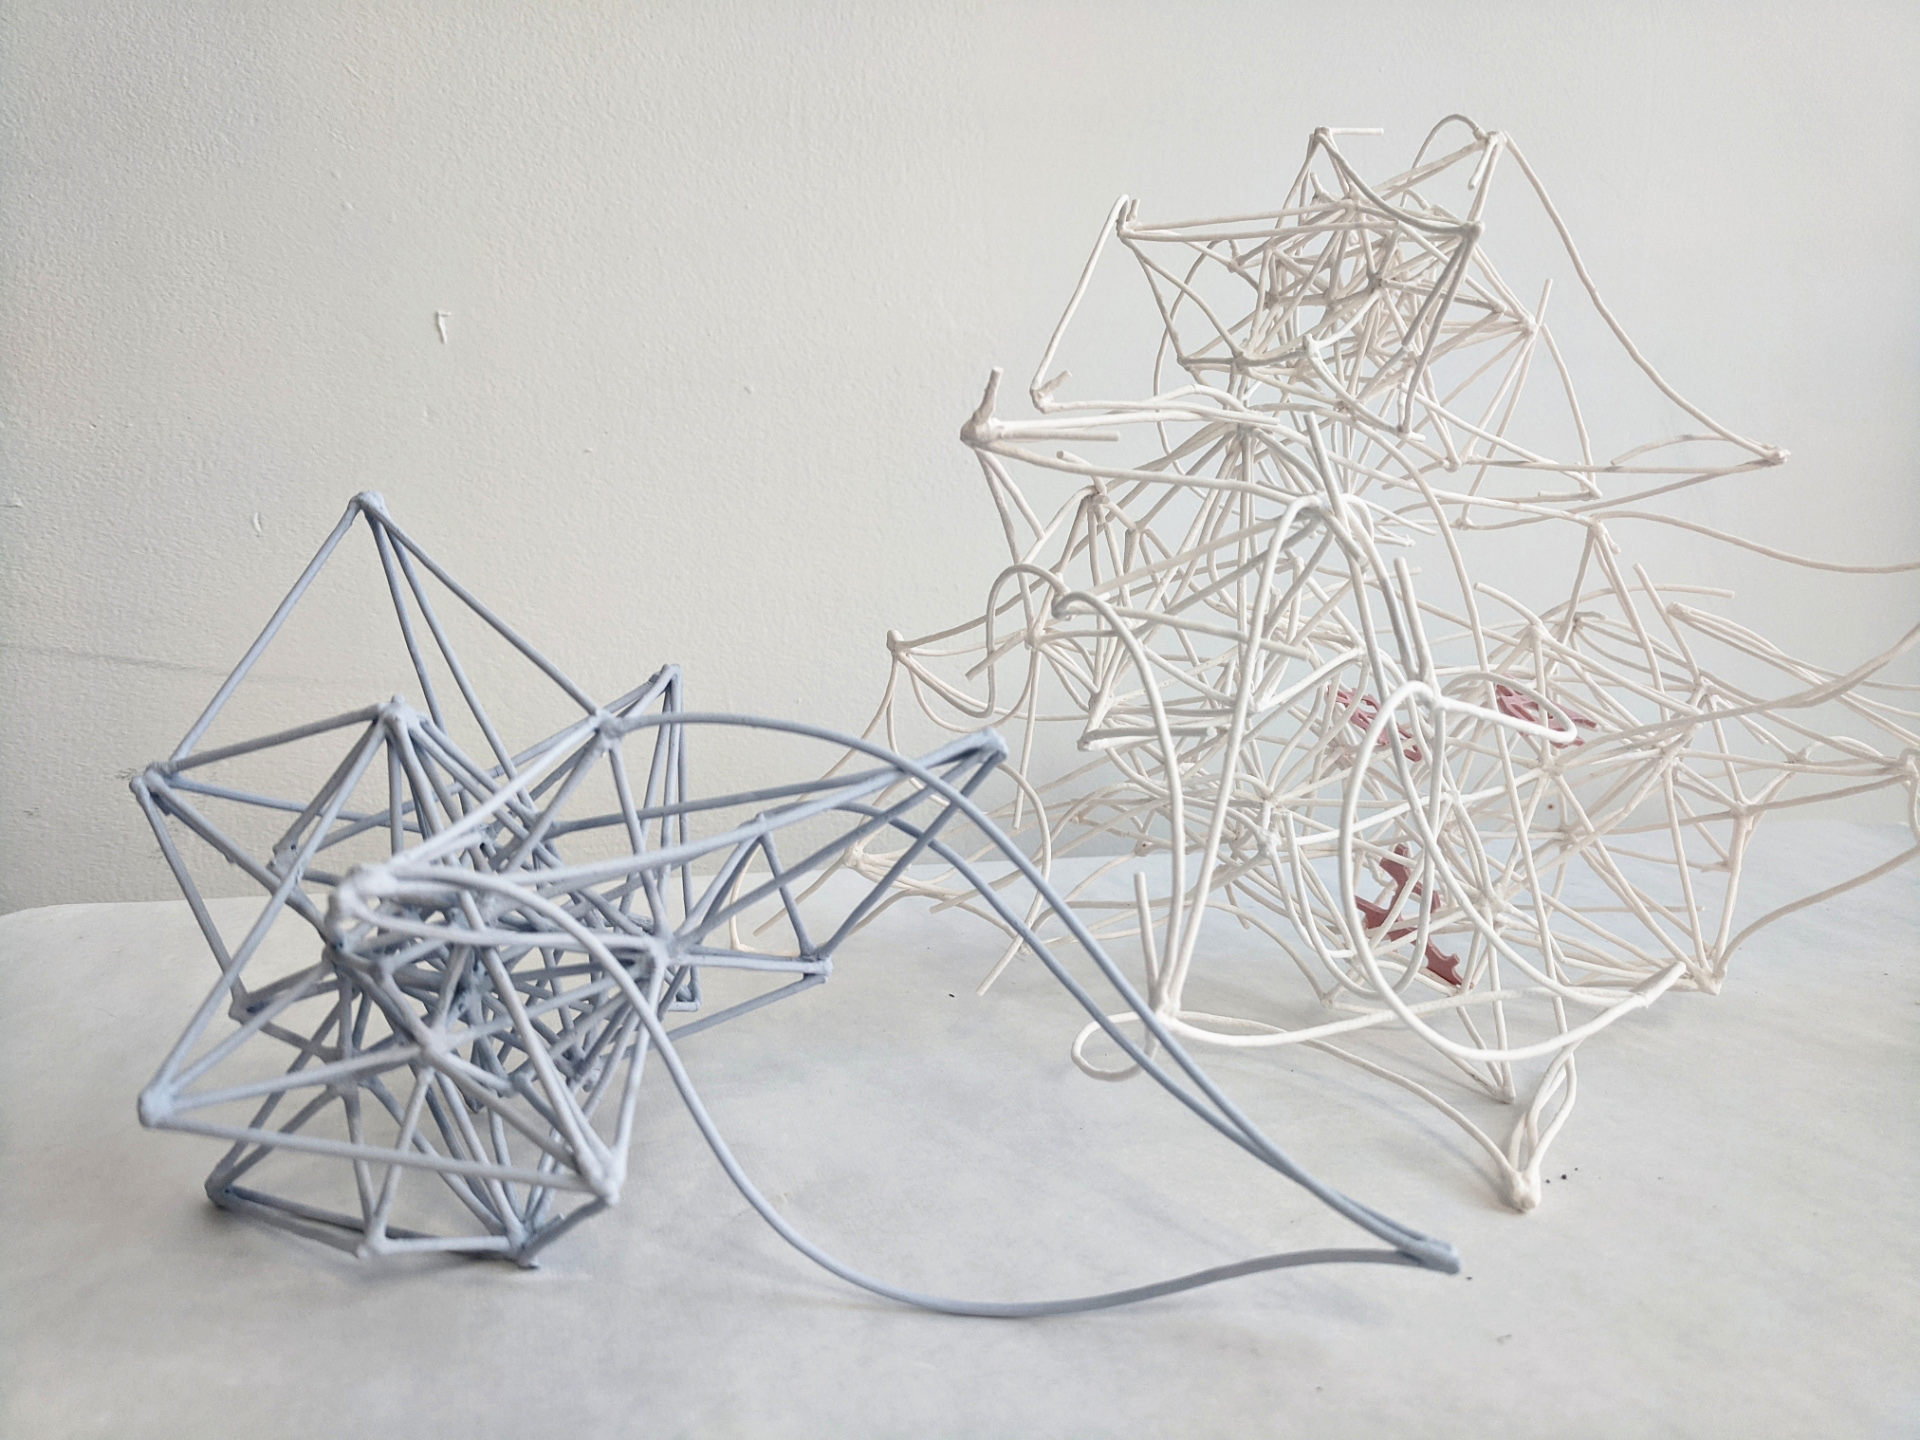 Sculptures by Benoit Savard